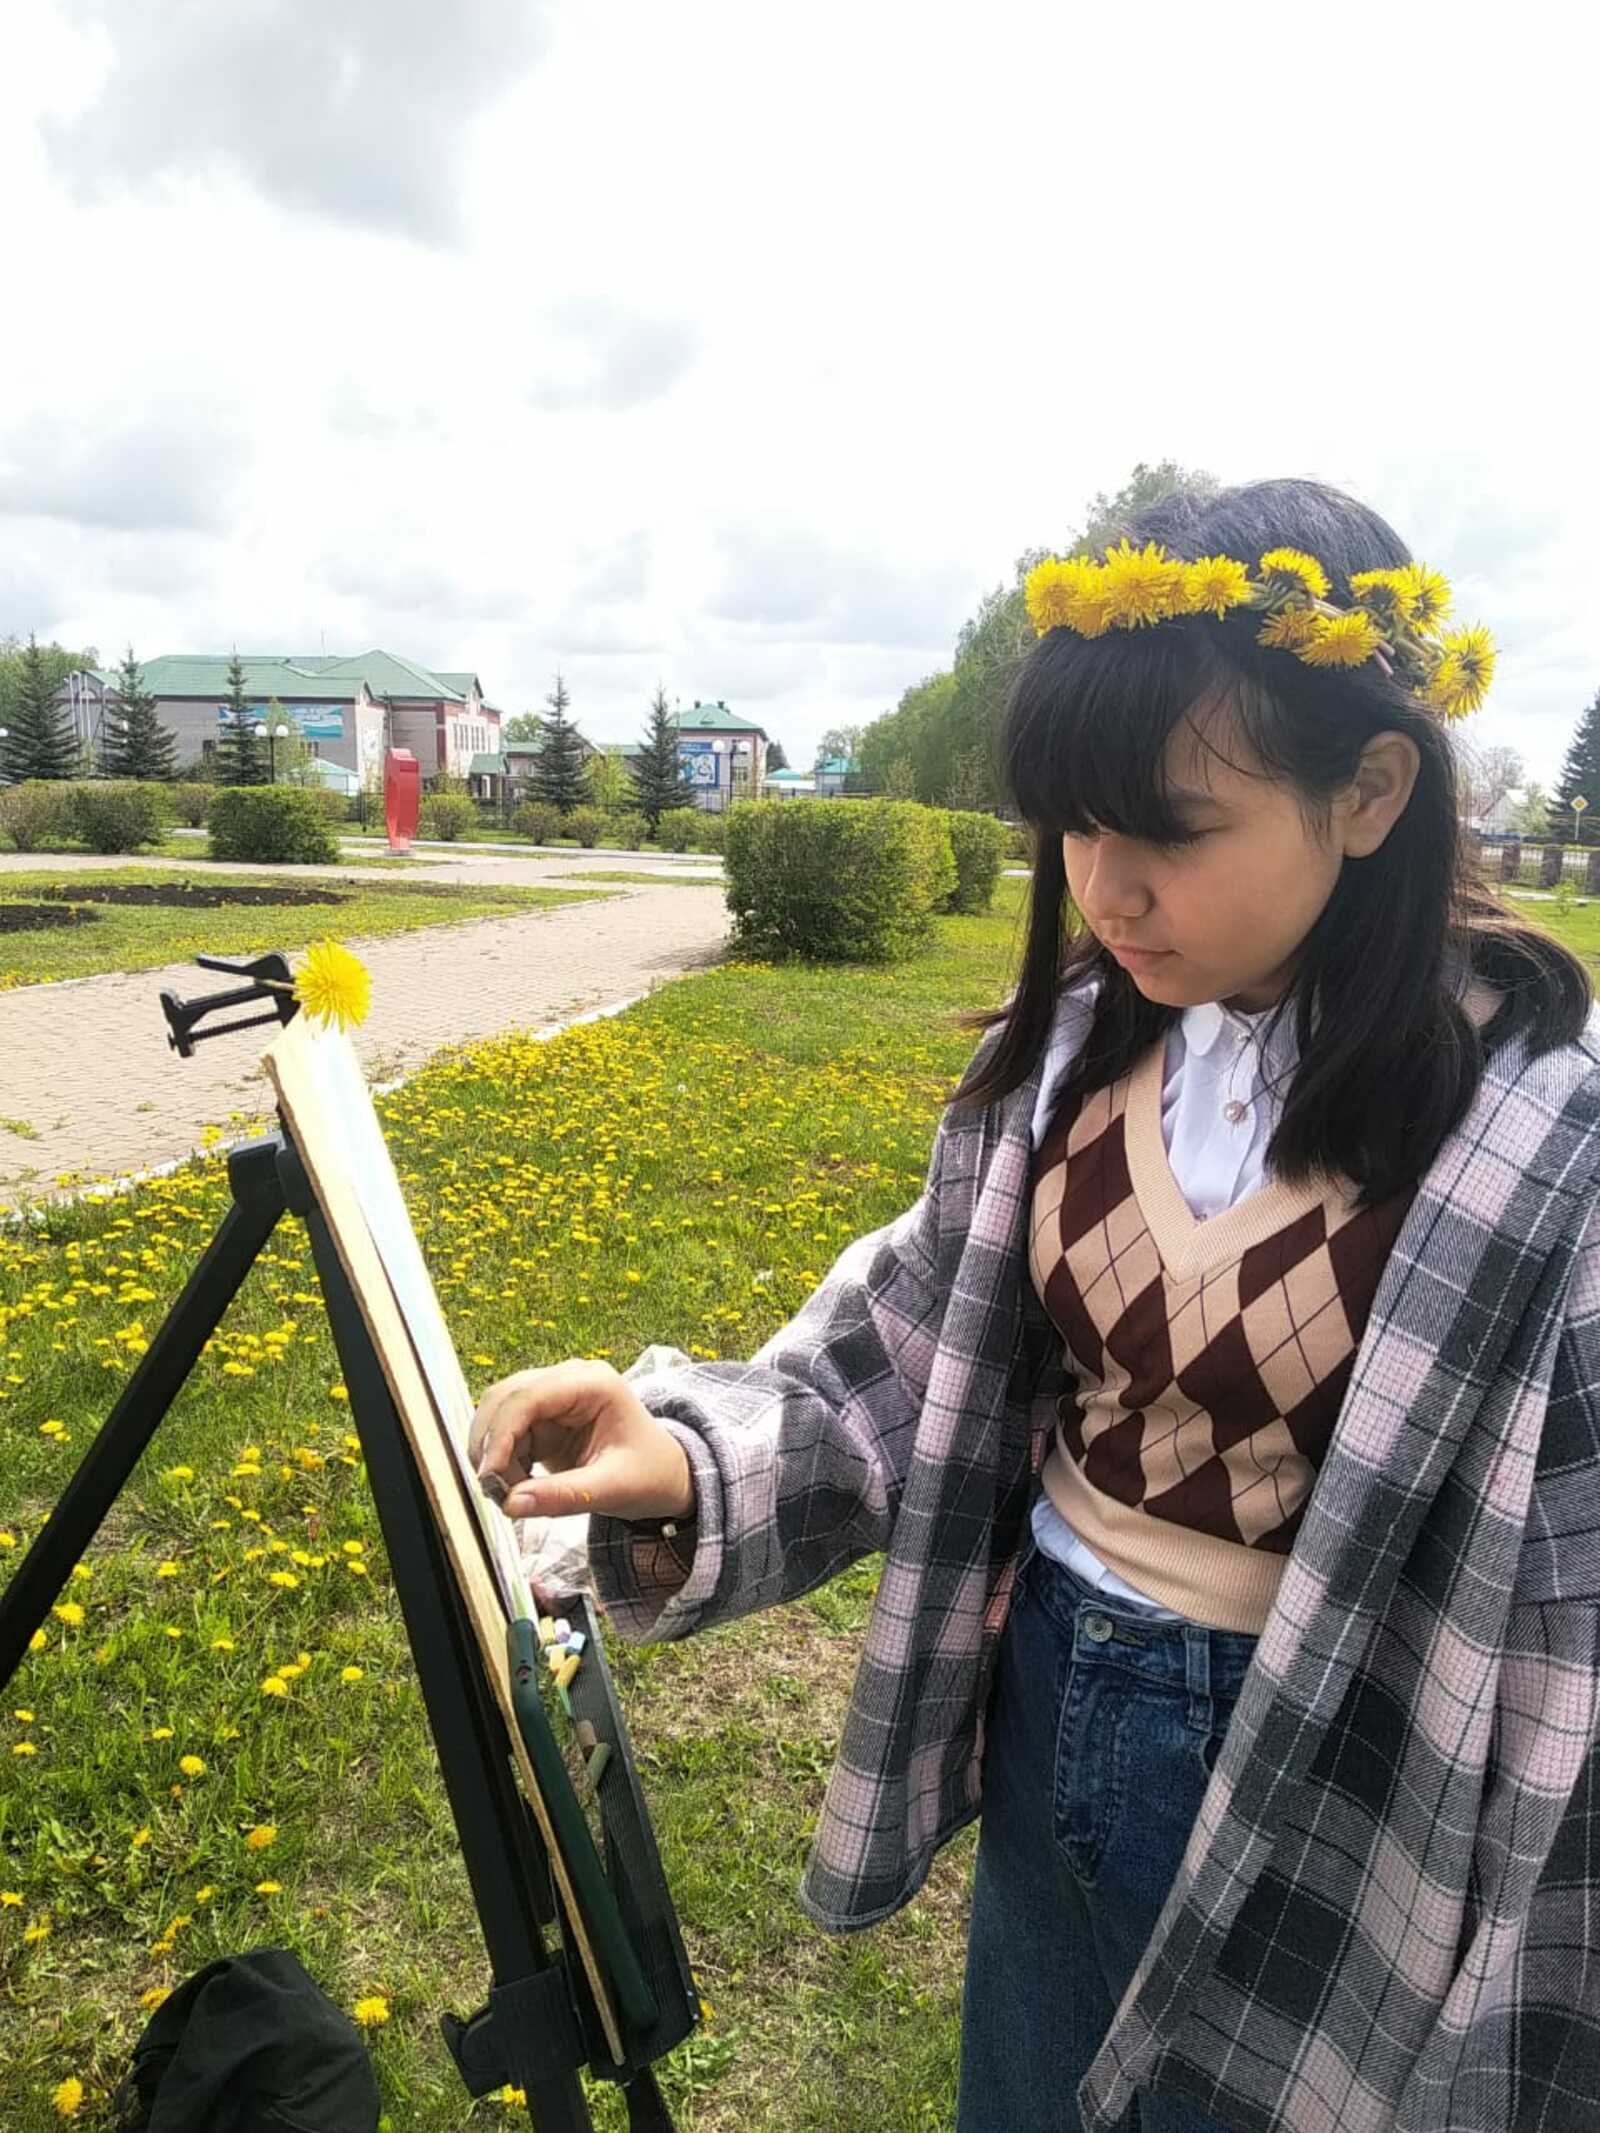 В Детской школе искусств с. Чекмагуш Республики Башкортостан в рамках дополнительной предпрофессиональной программы прошла летняя практика